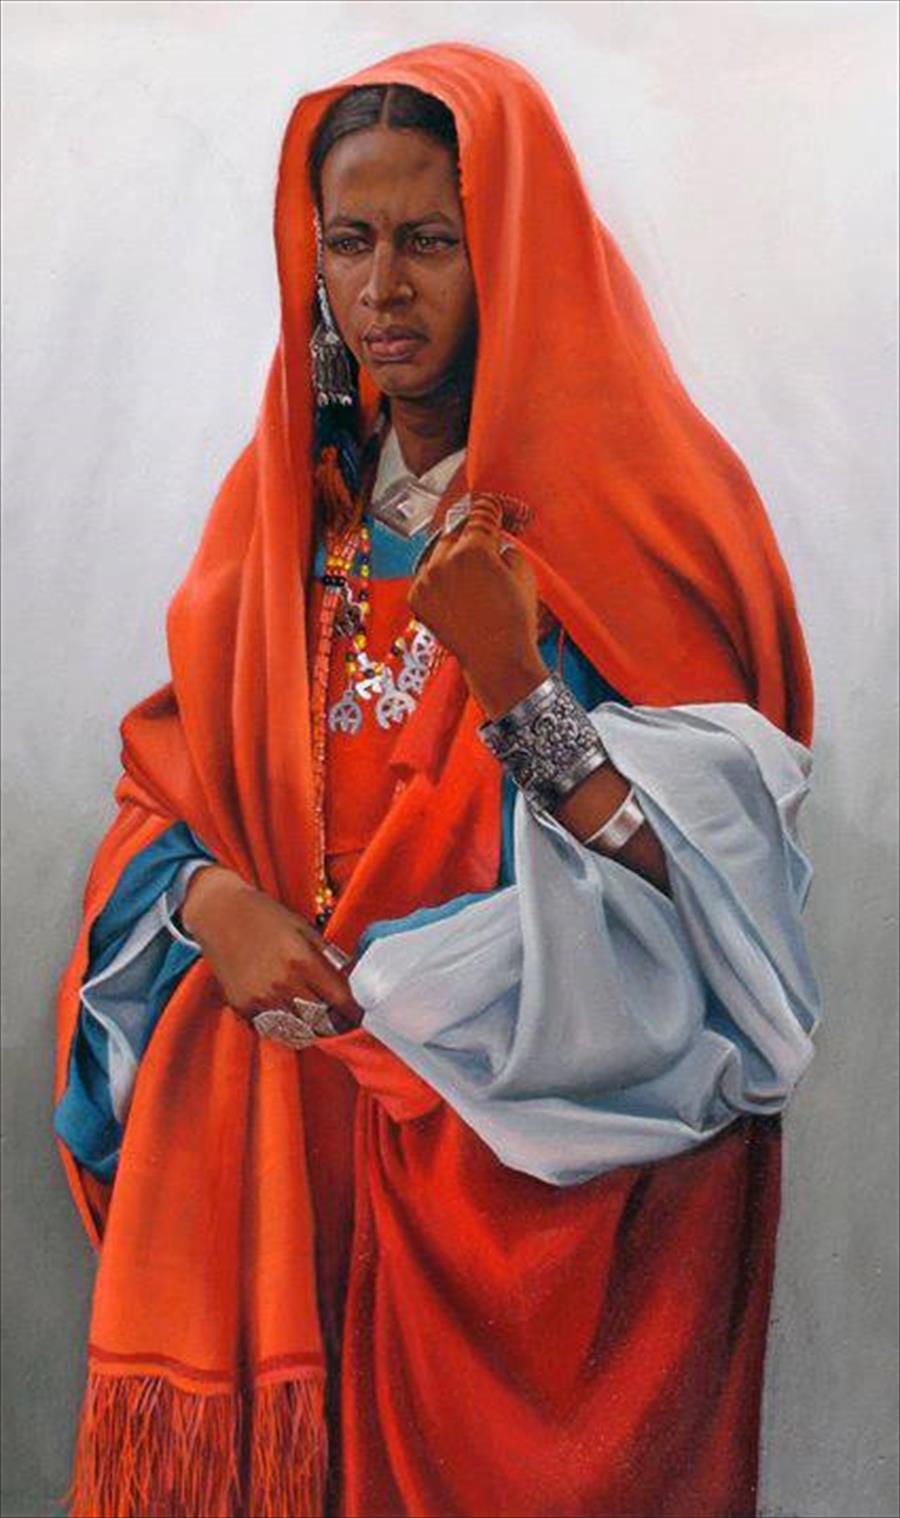 الرياني.. الفنان الذي جسد الوجوه الليبية